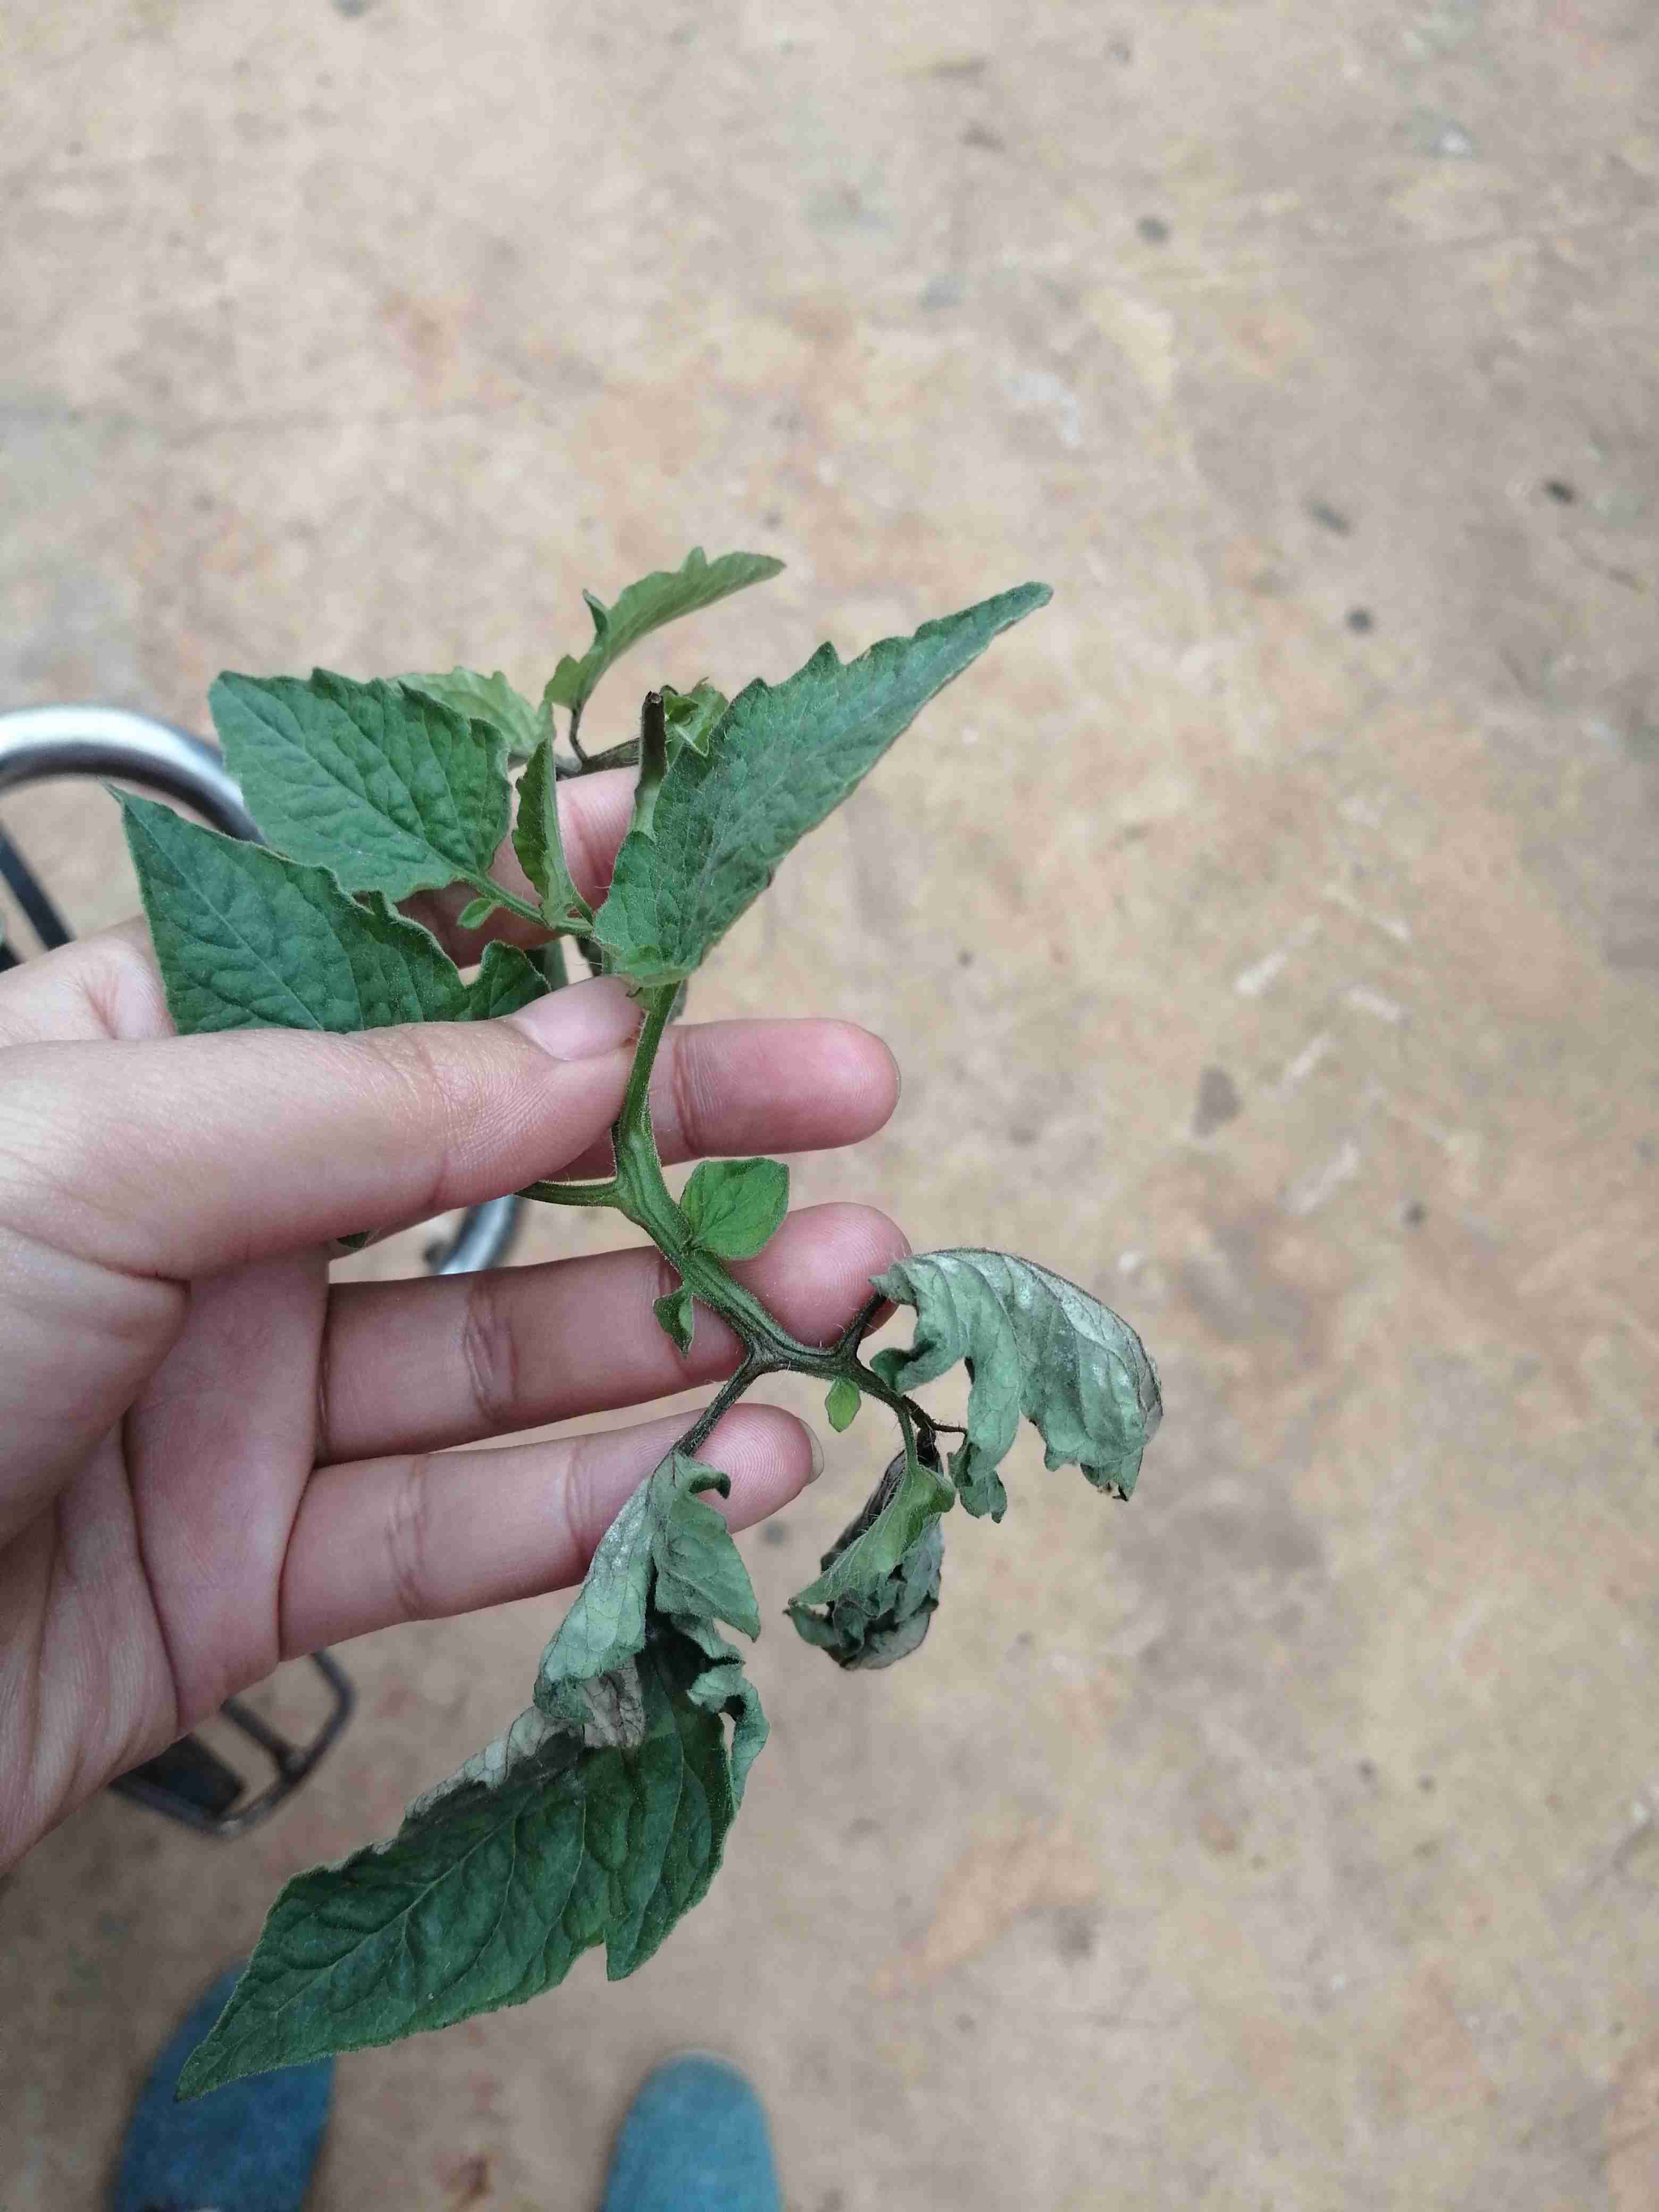 专家好我种植的西红柿叶子出现干枯请问是什么原因引起的要怎么防治呢